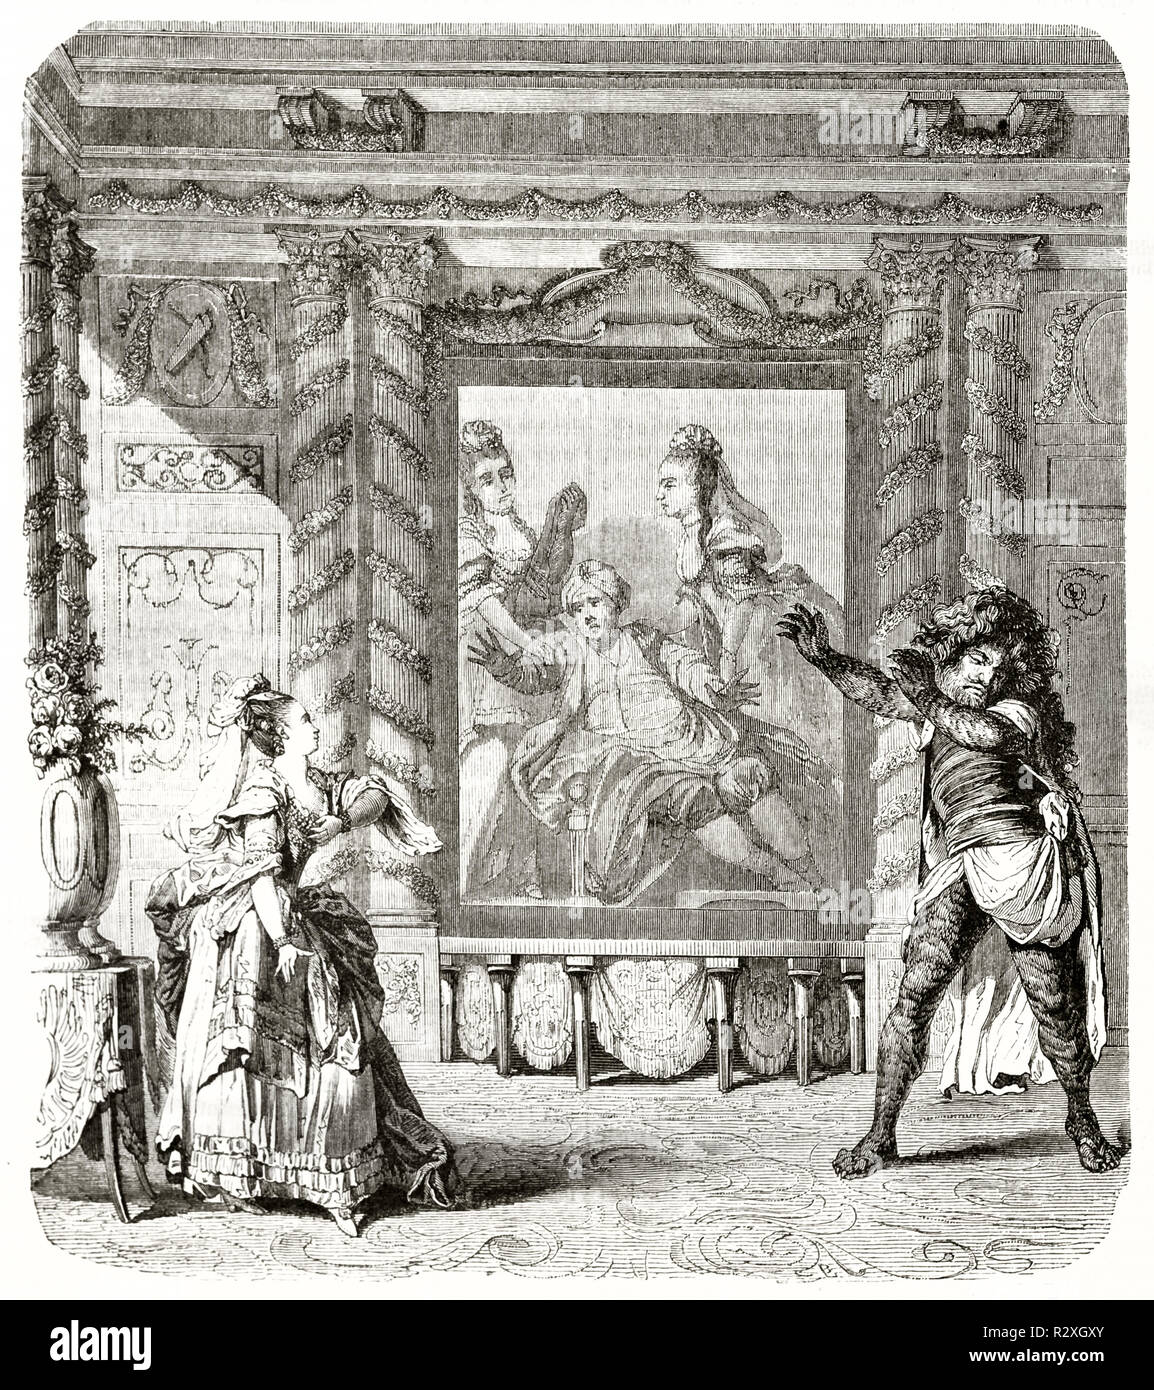 Antigua Ilustración de una escena de Zemine et Azor ballet-ópera. Arte de estilo grabado vintage publicado en la revista Pittoresque 1771 Foto de stock